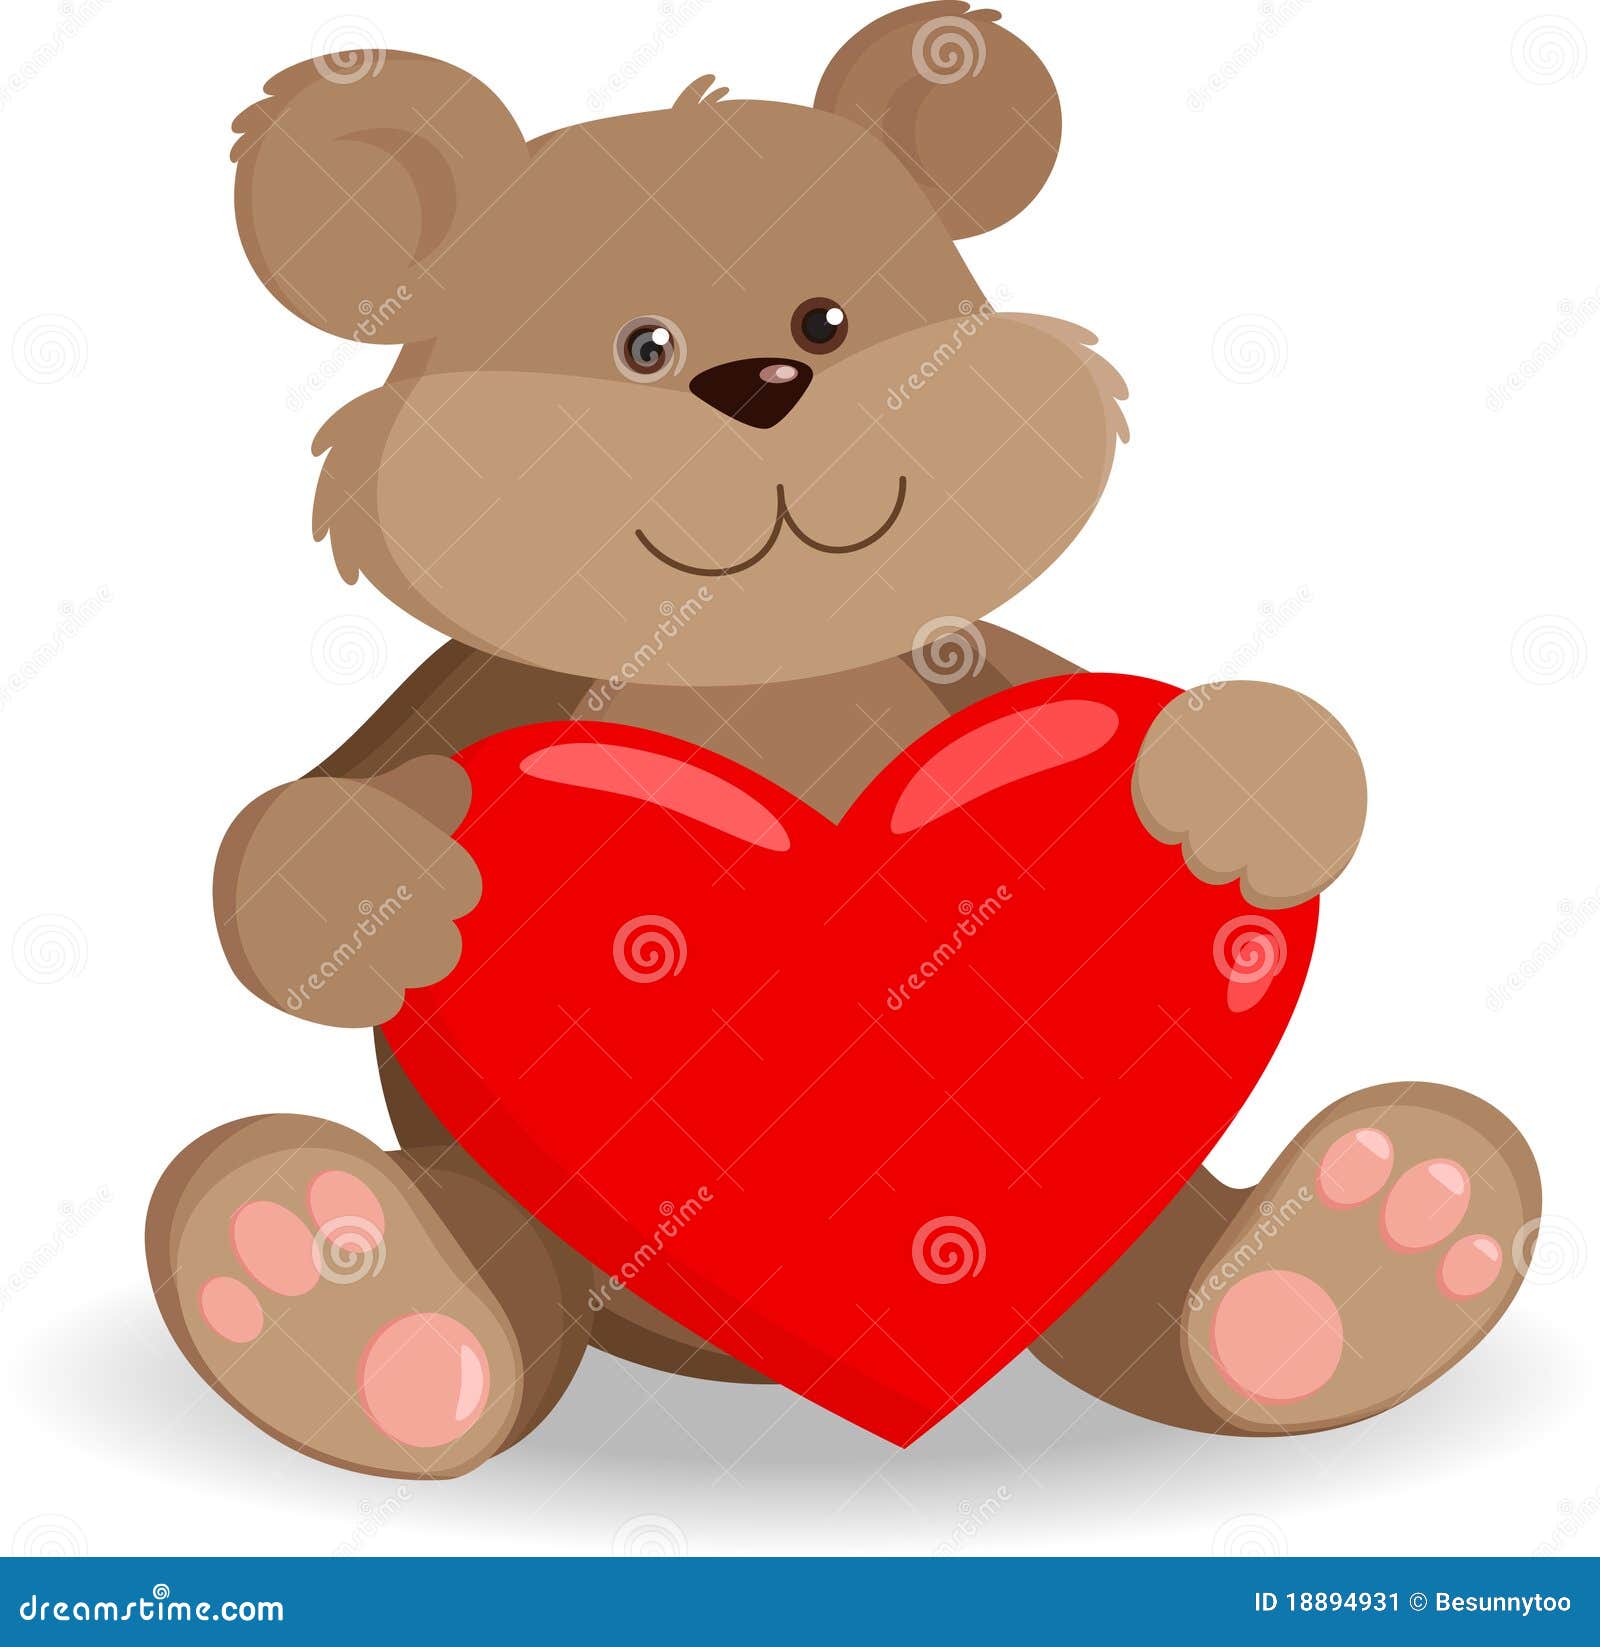 clipart teddy bear with heart - photo #13